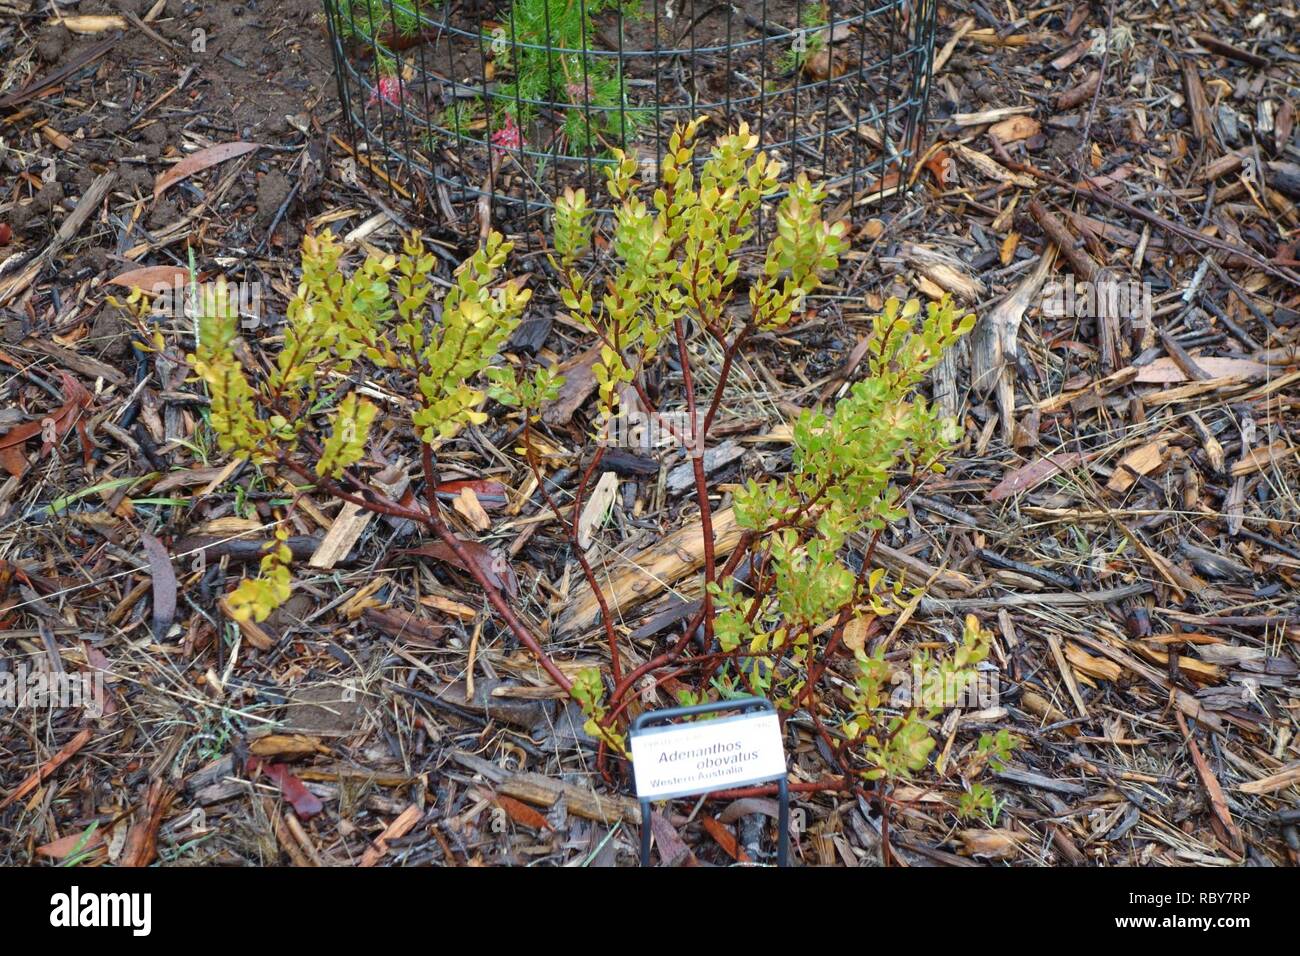 Adenanthos obovatus - UC Santa Cruz Arboretum - DSC07389. Stock Photo